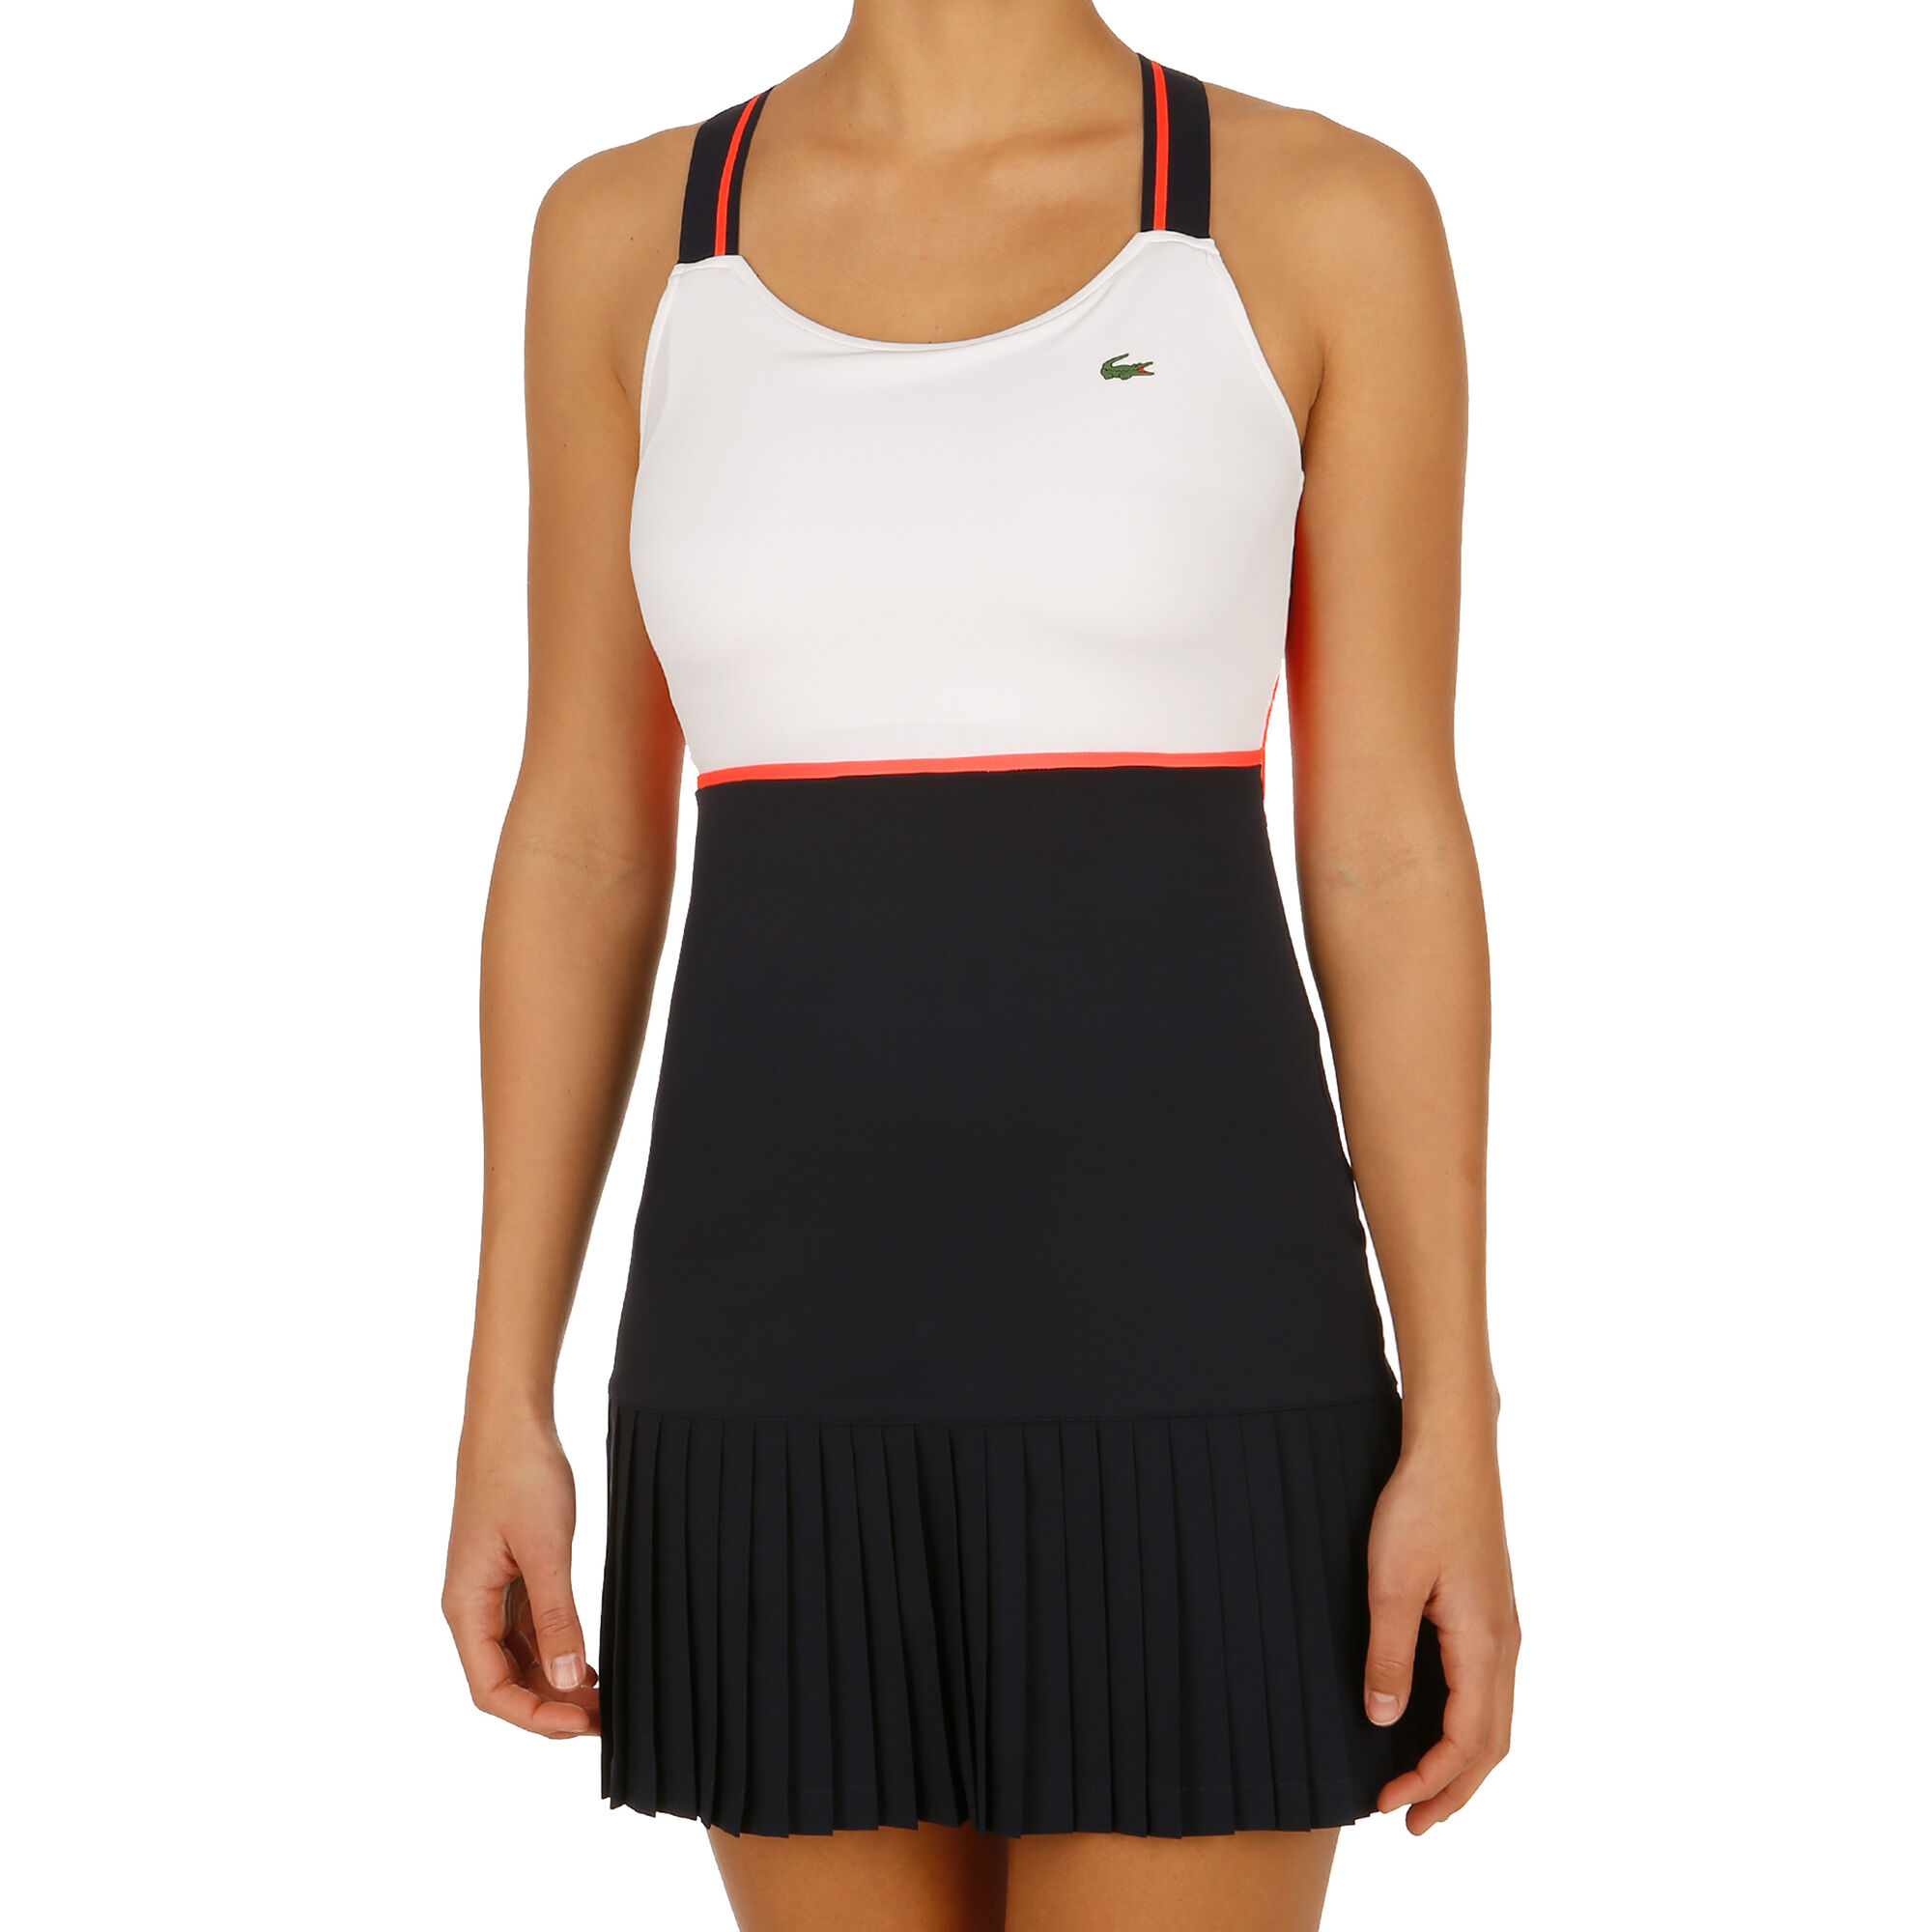 Lacoste Kleid Damen Weiß, Dunkelblau online kaufen | Tennis Point DE